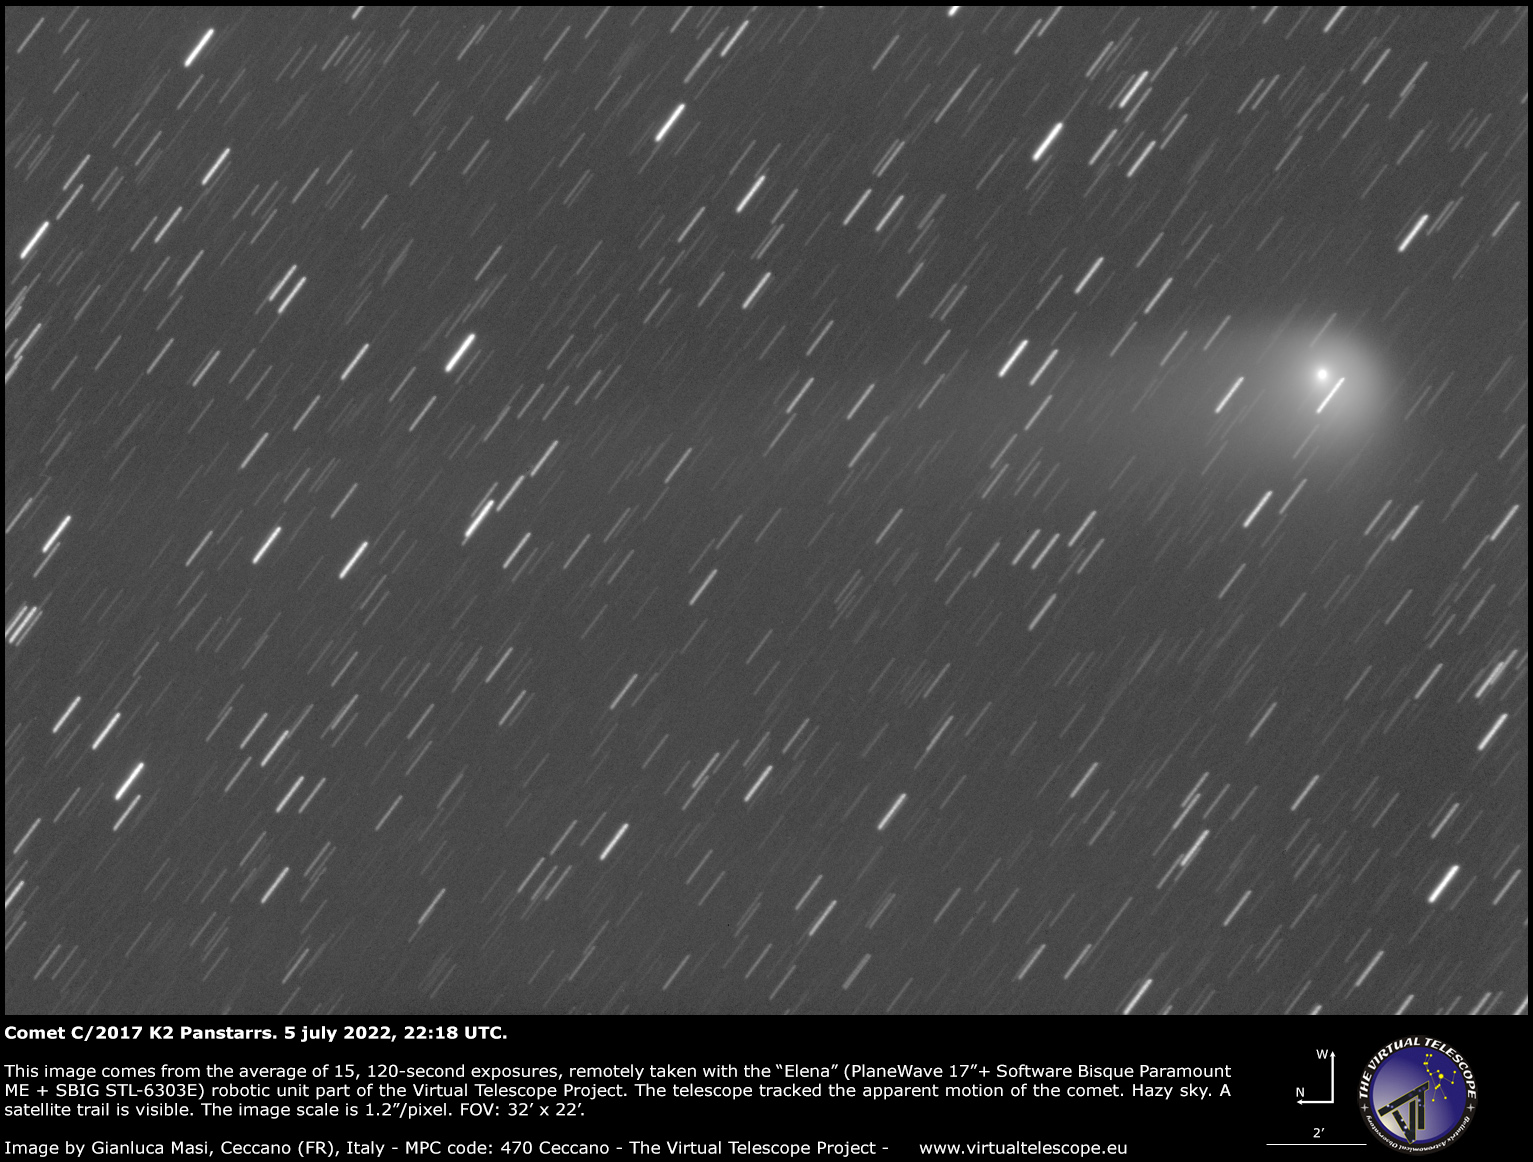 Comet C/2017 K2 Panstarrs: 5 July 2022.